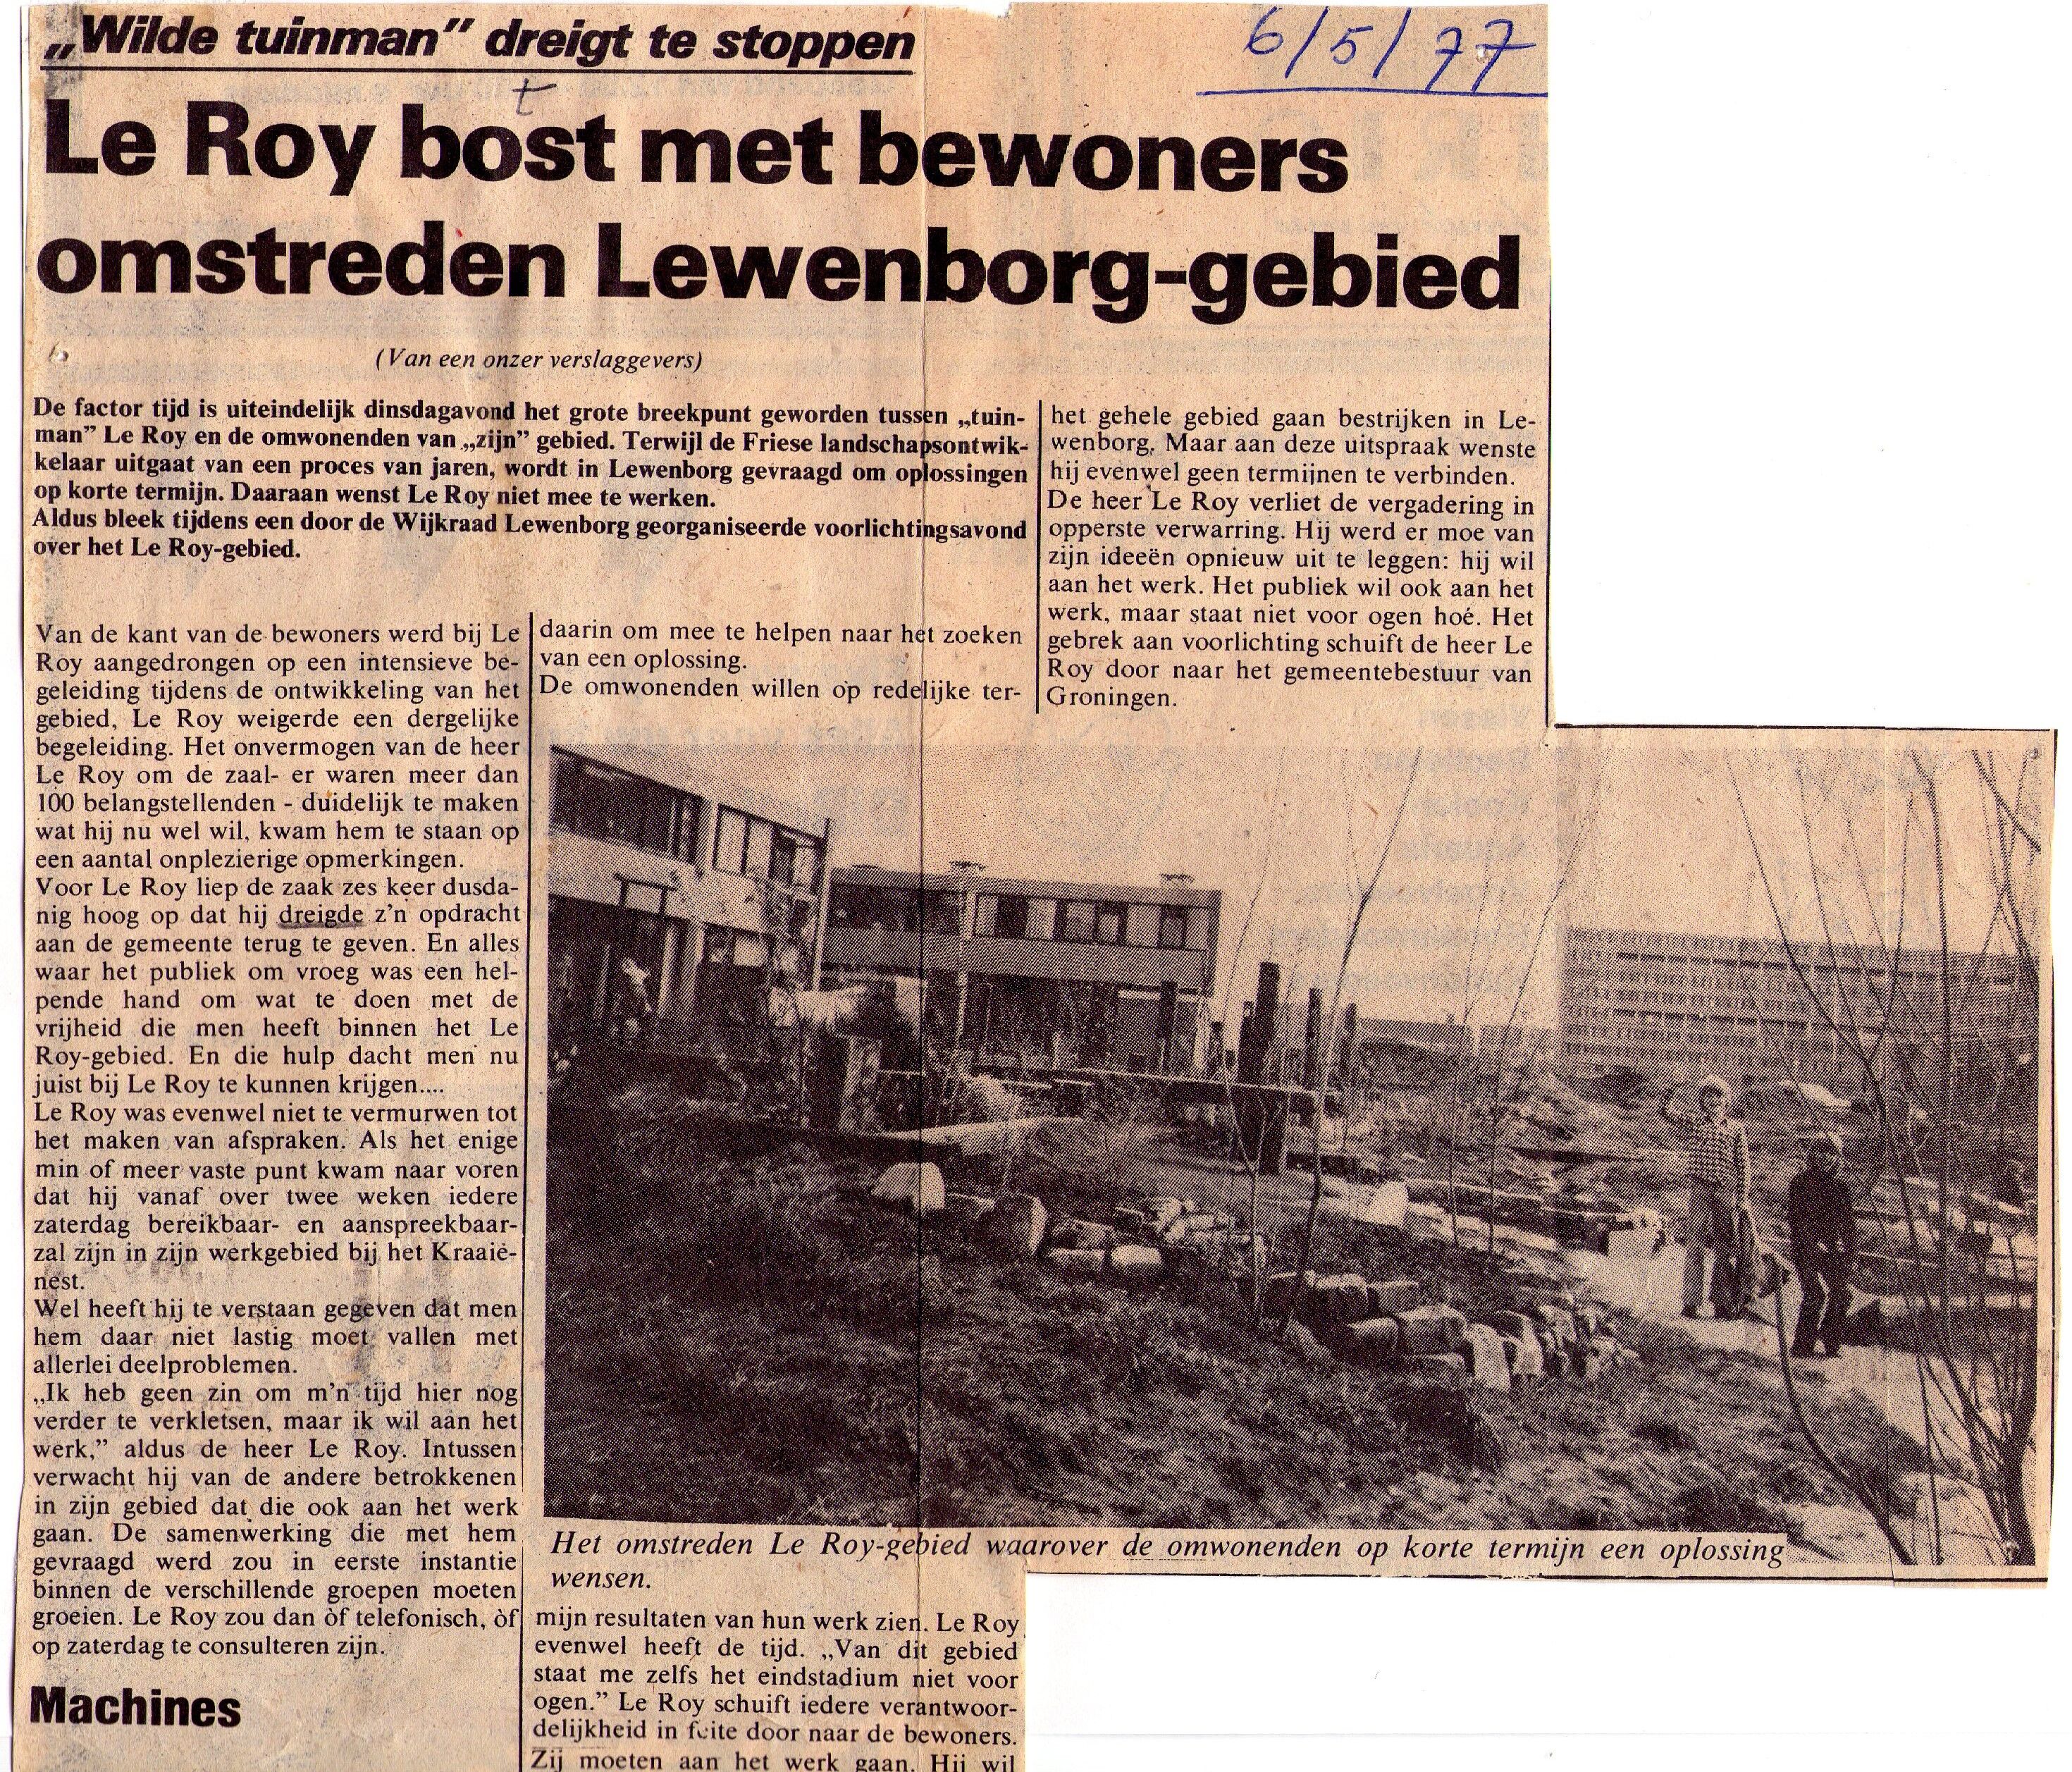 19770506_Le_Roy_botst_met_bewoners_omstreden_Lewenborg-gebied_001.jpg